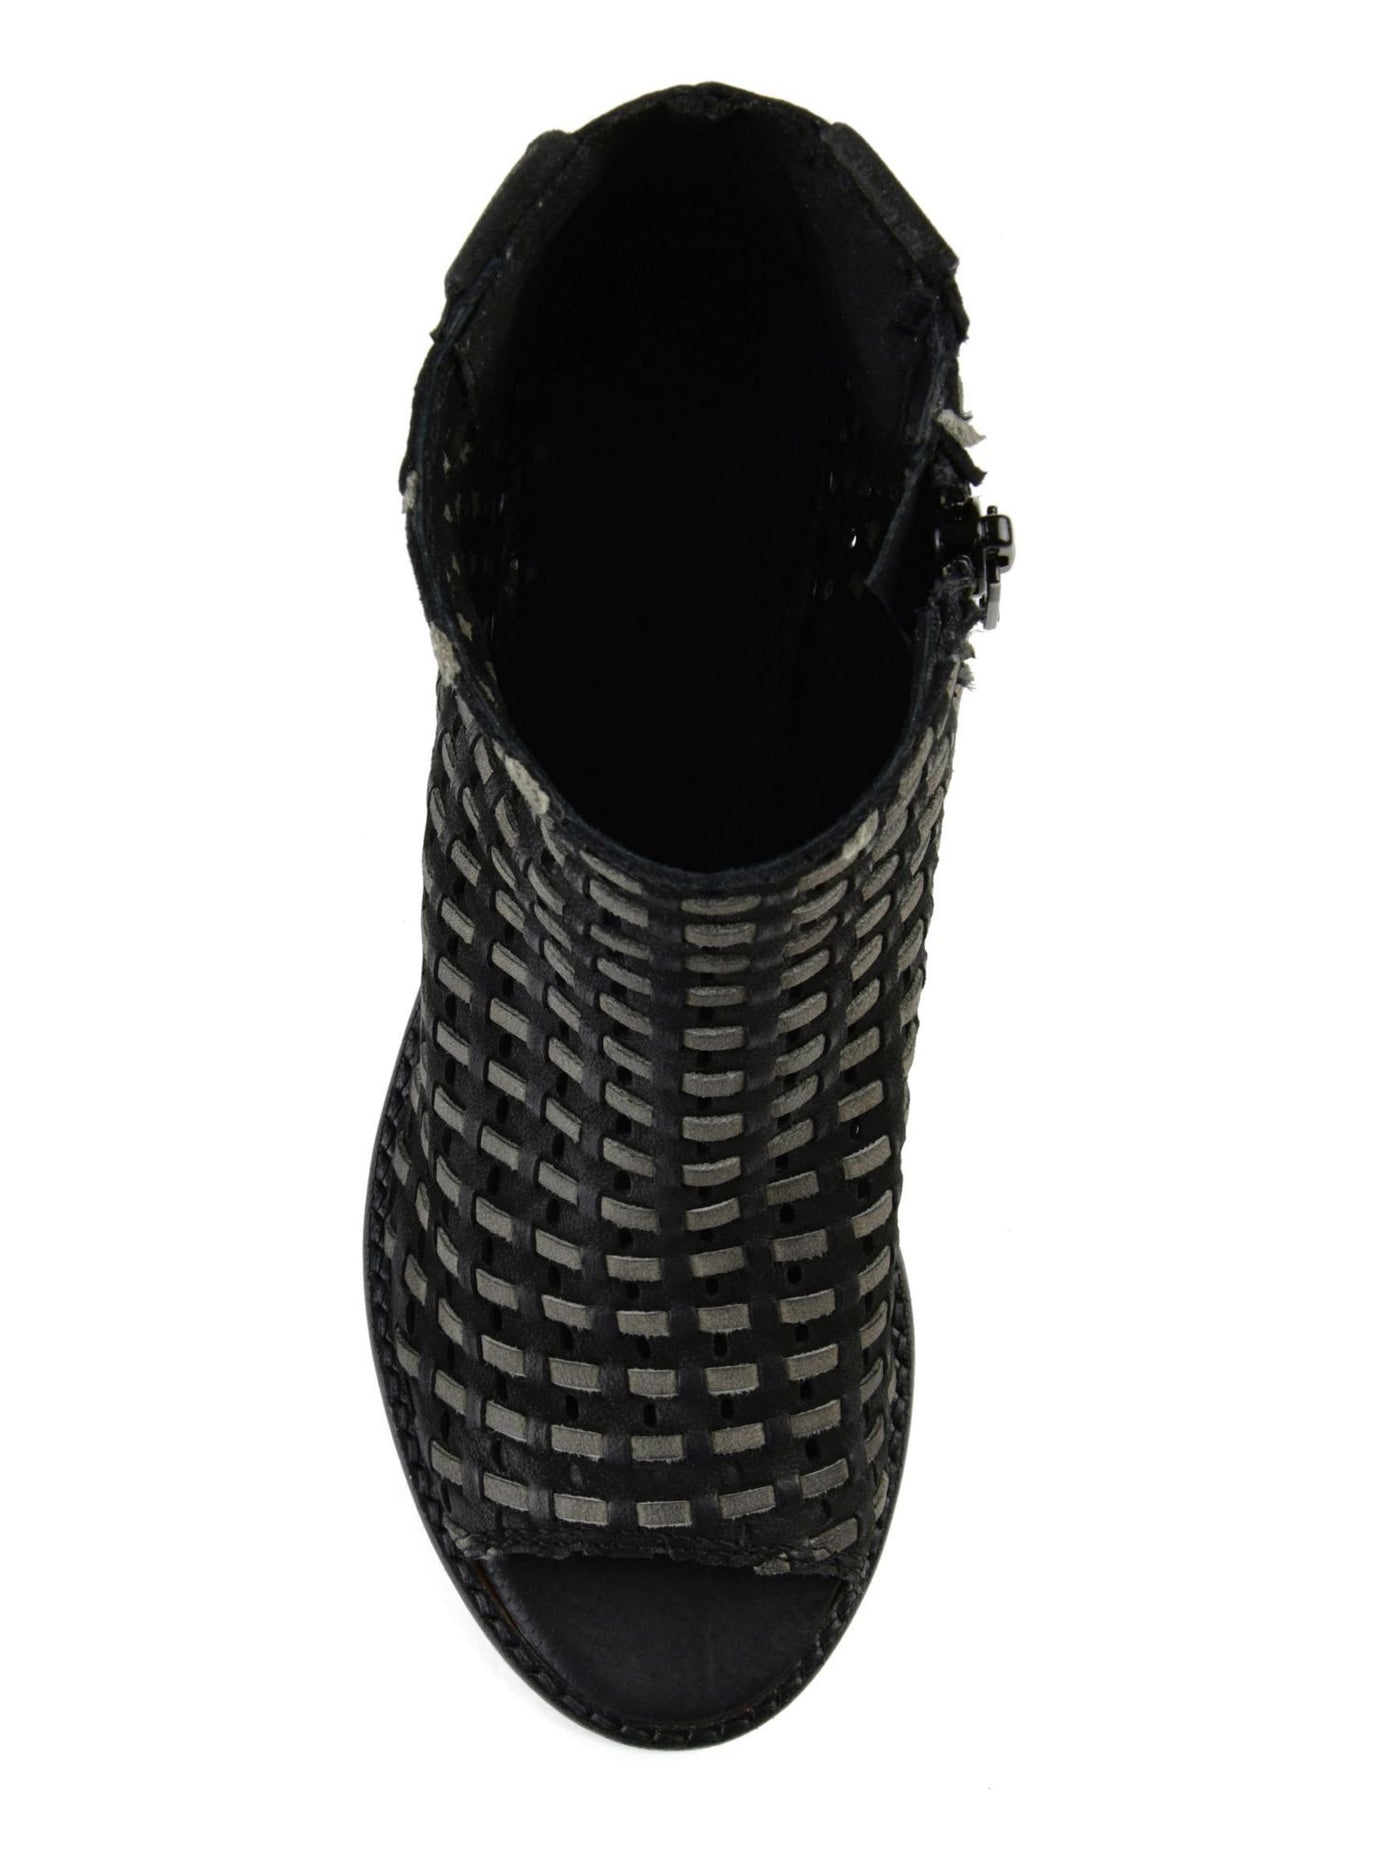 JOURNEE COLLECTION Womens Black Comfort Woven Breathable Devine Open Toe Block Heel Zip-Up Leather Booties 10